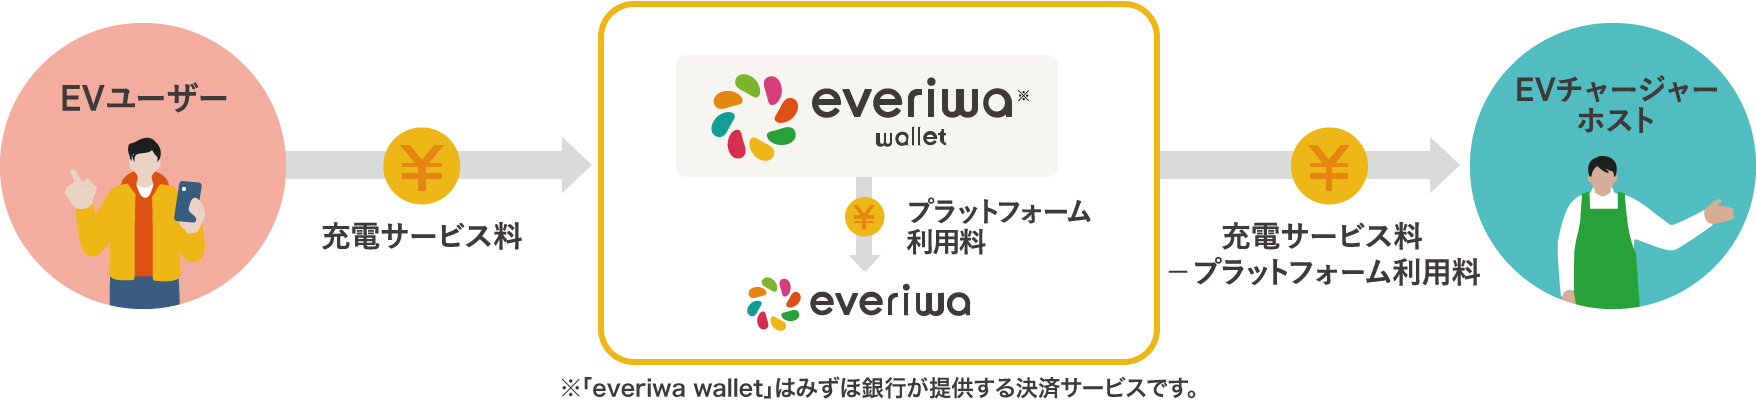 EVユーザー 充電サービス料 everiwa wallet プラットフォーム利用料 everiwa ※「everiwa wallet」はみずほ銀行が提供する決済サービスです。充電サービス料-プラットフォーム利用料 EVチャージャーホスト